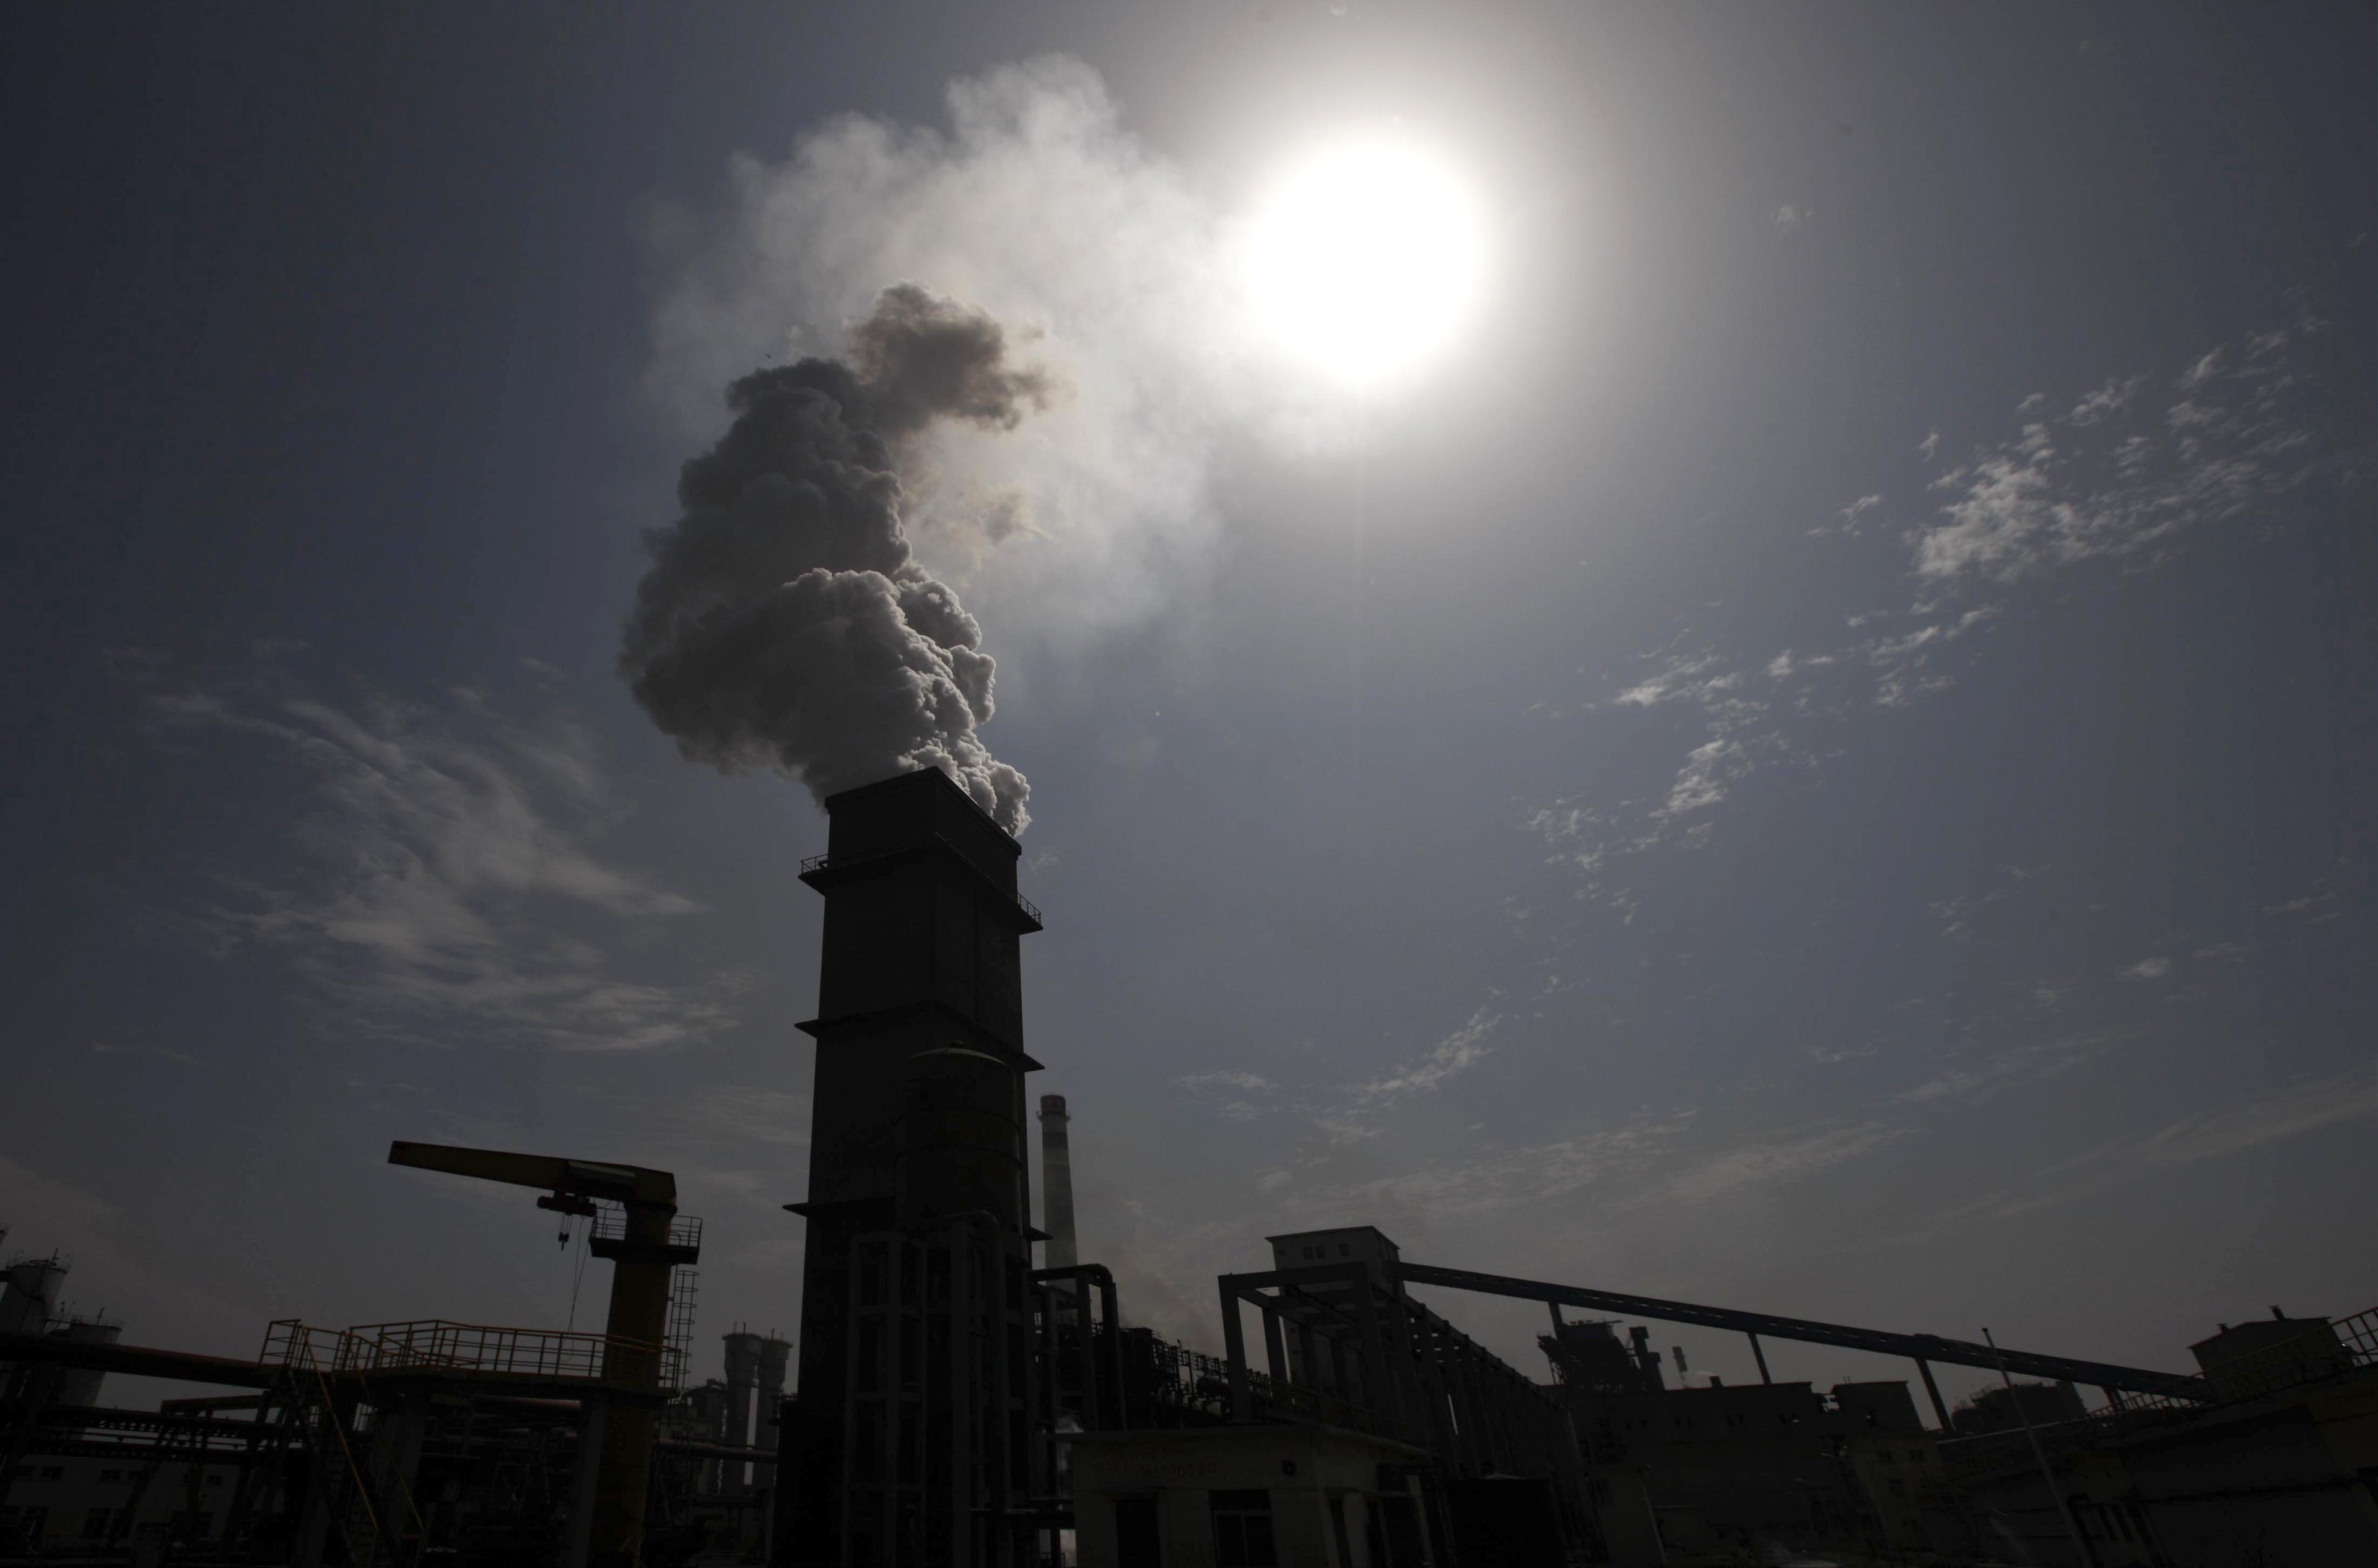 Kinas statistik över utsläpp av växthusgaser hade tidigare missat många utsläppskällor. Därför har man nu skrivit upp prognosen med 17 procent. På bilden syns ett kolkraftverk i Huaibei, Anhuiprovinsen. (Foto: STR/AFP/Getty Images)